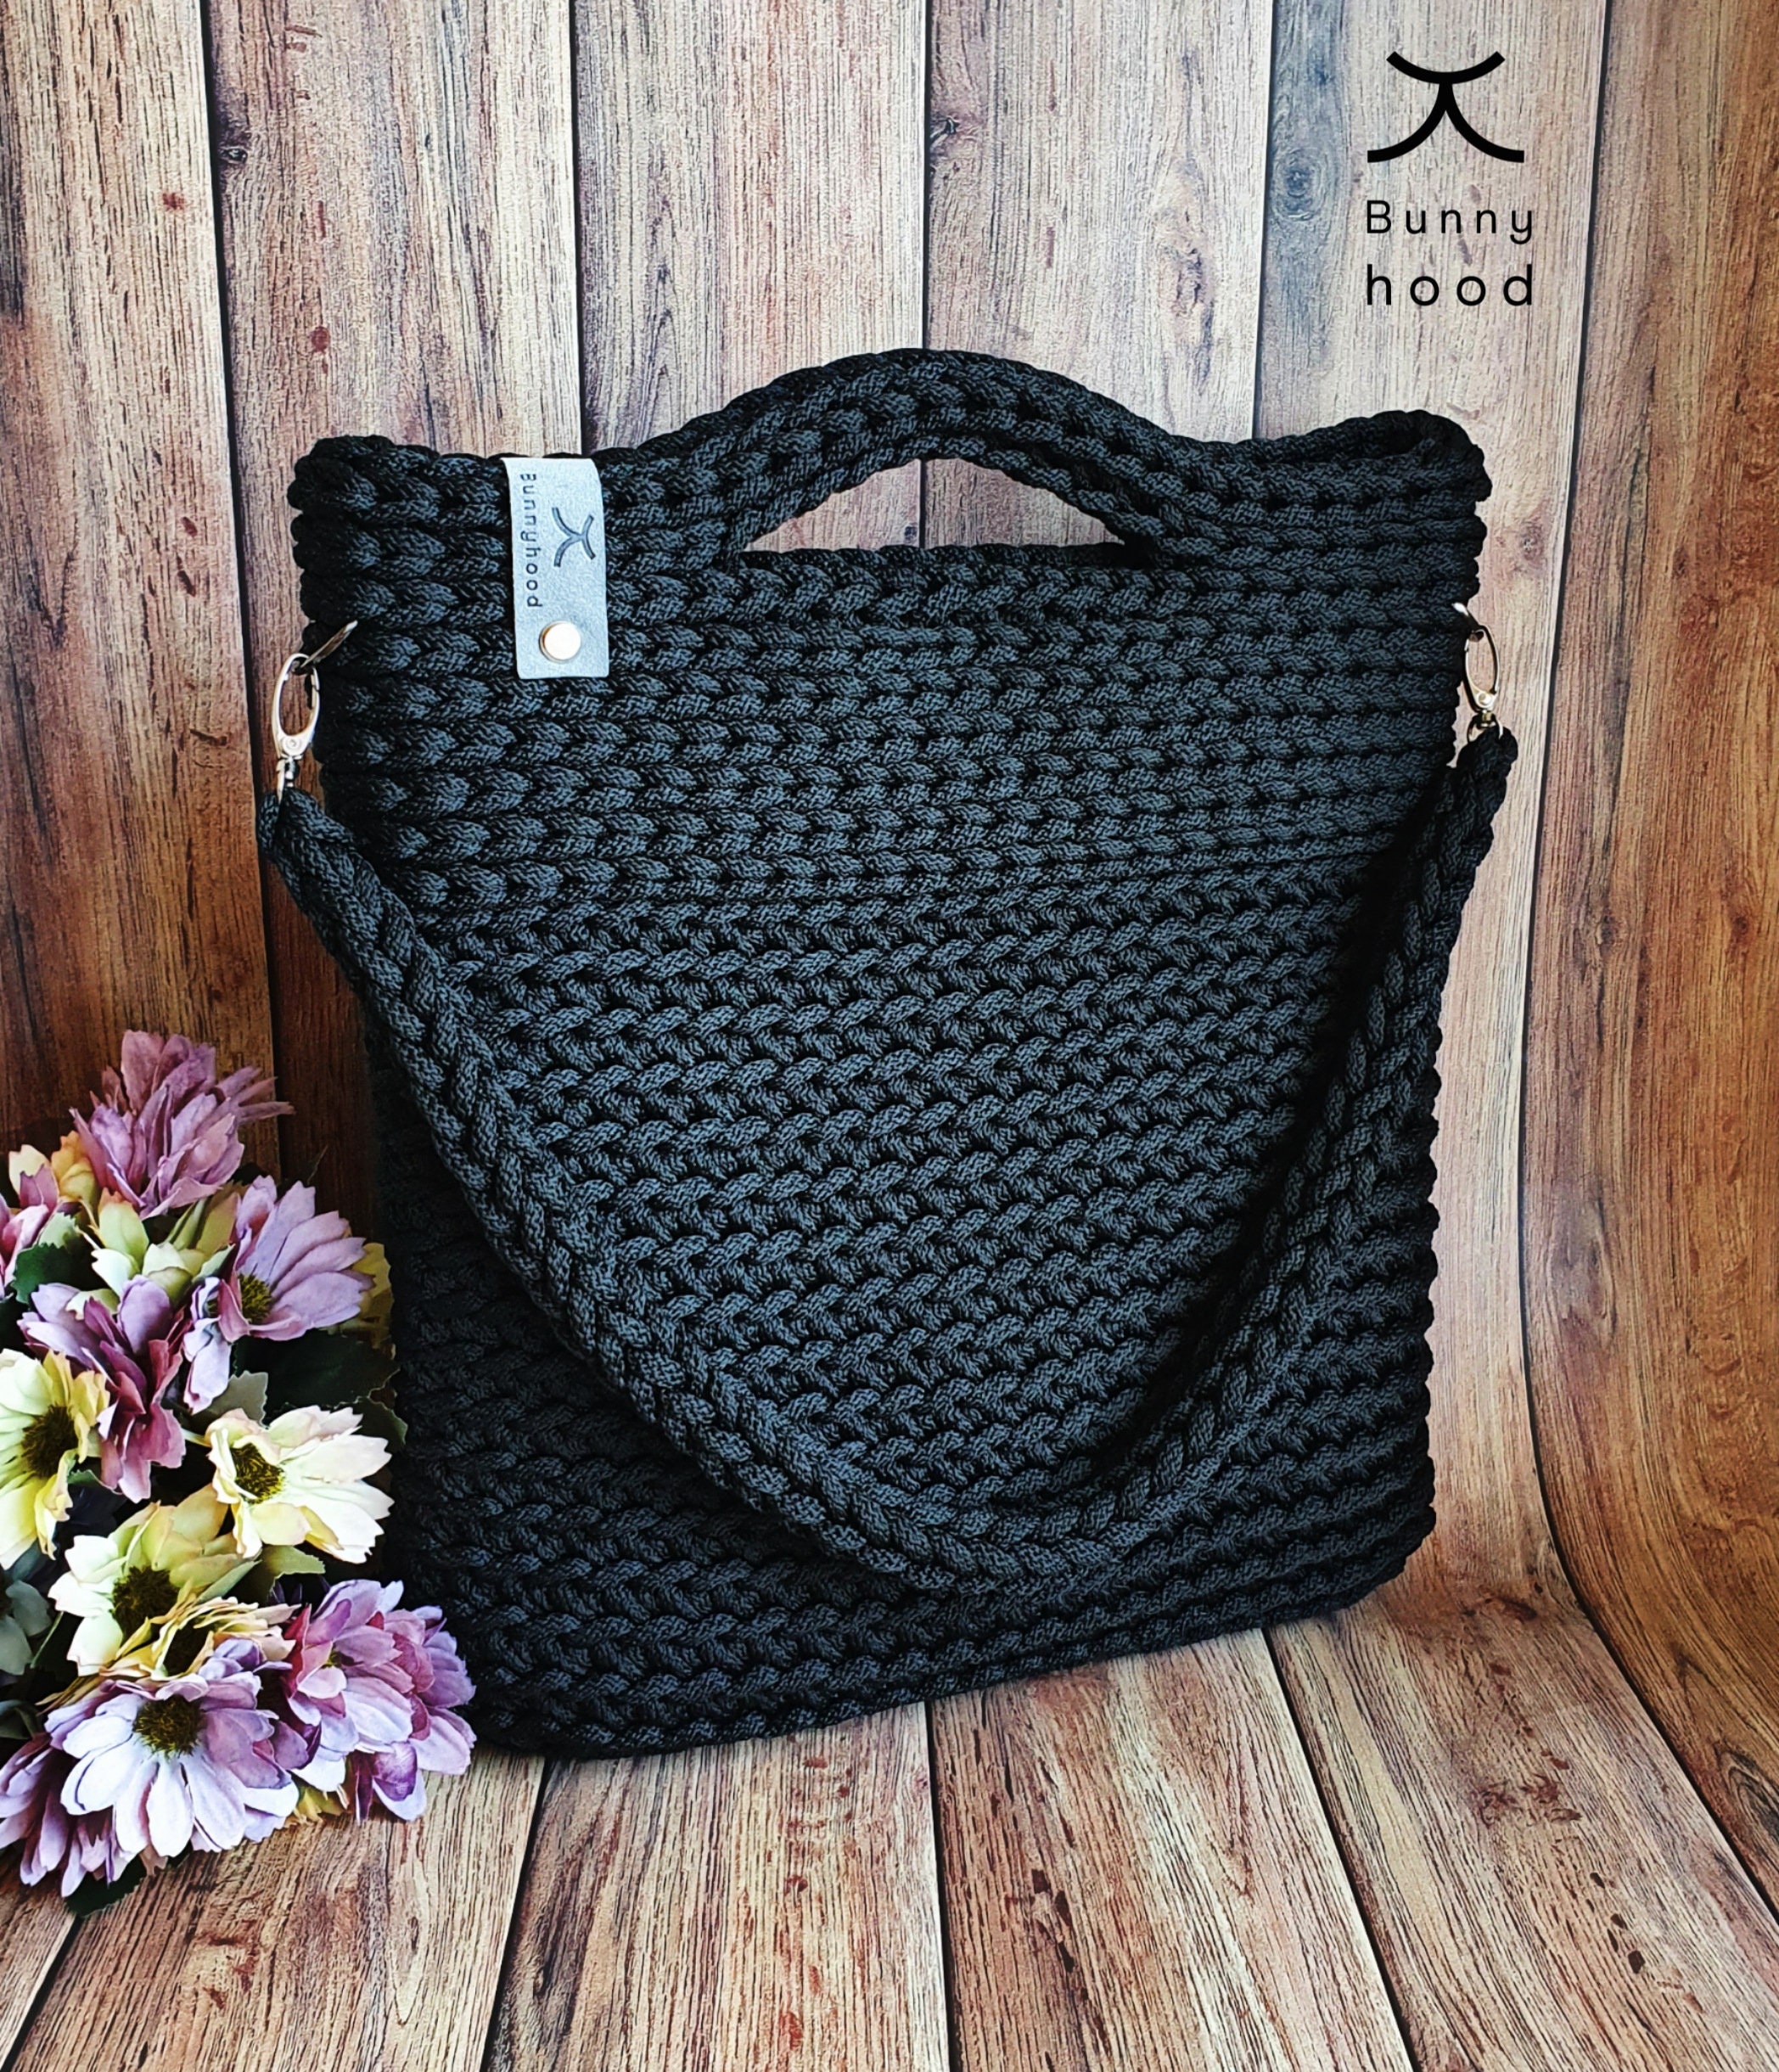 Crochet Shoulder Bag my Dreams / Crochet Handbag / | Etsy